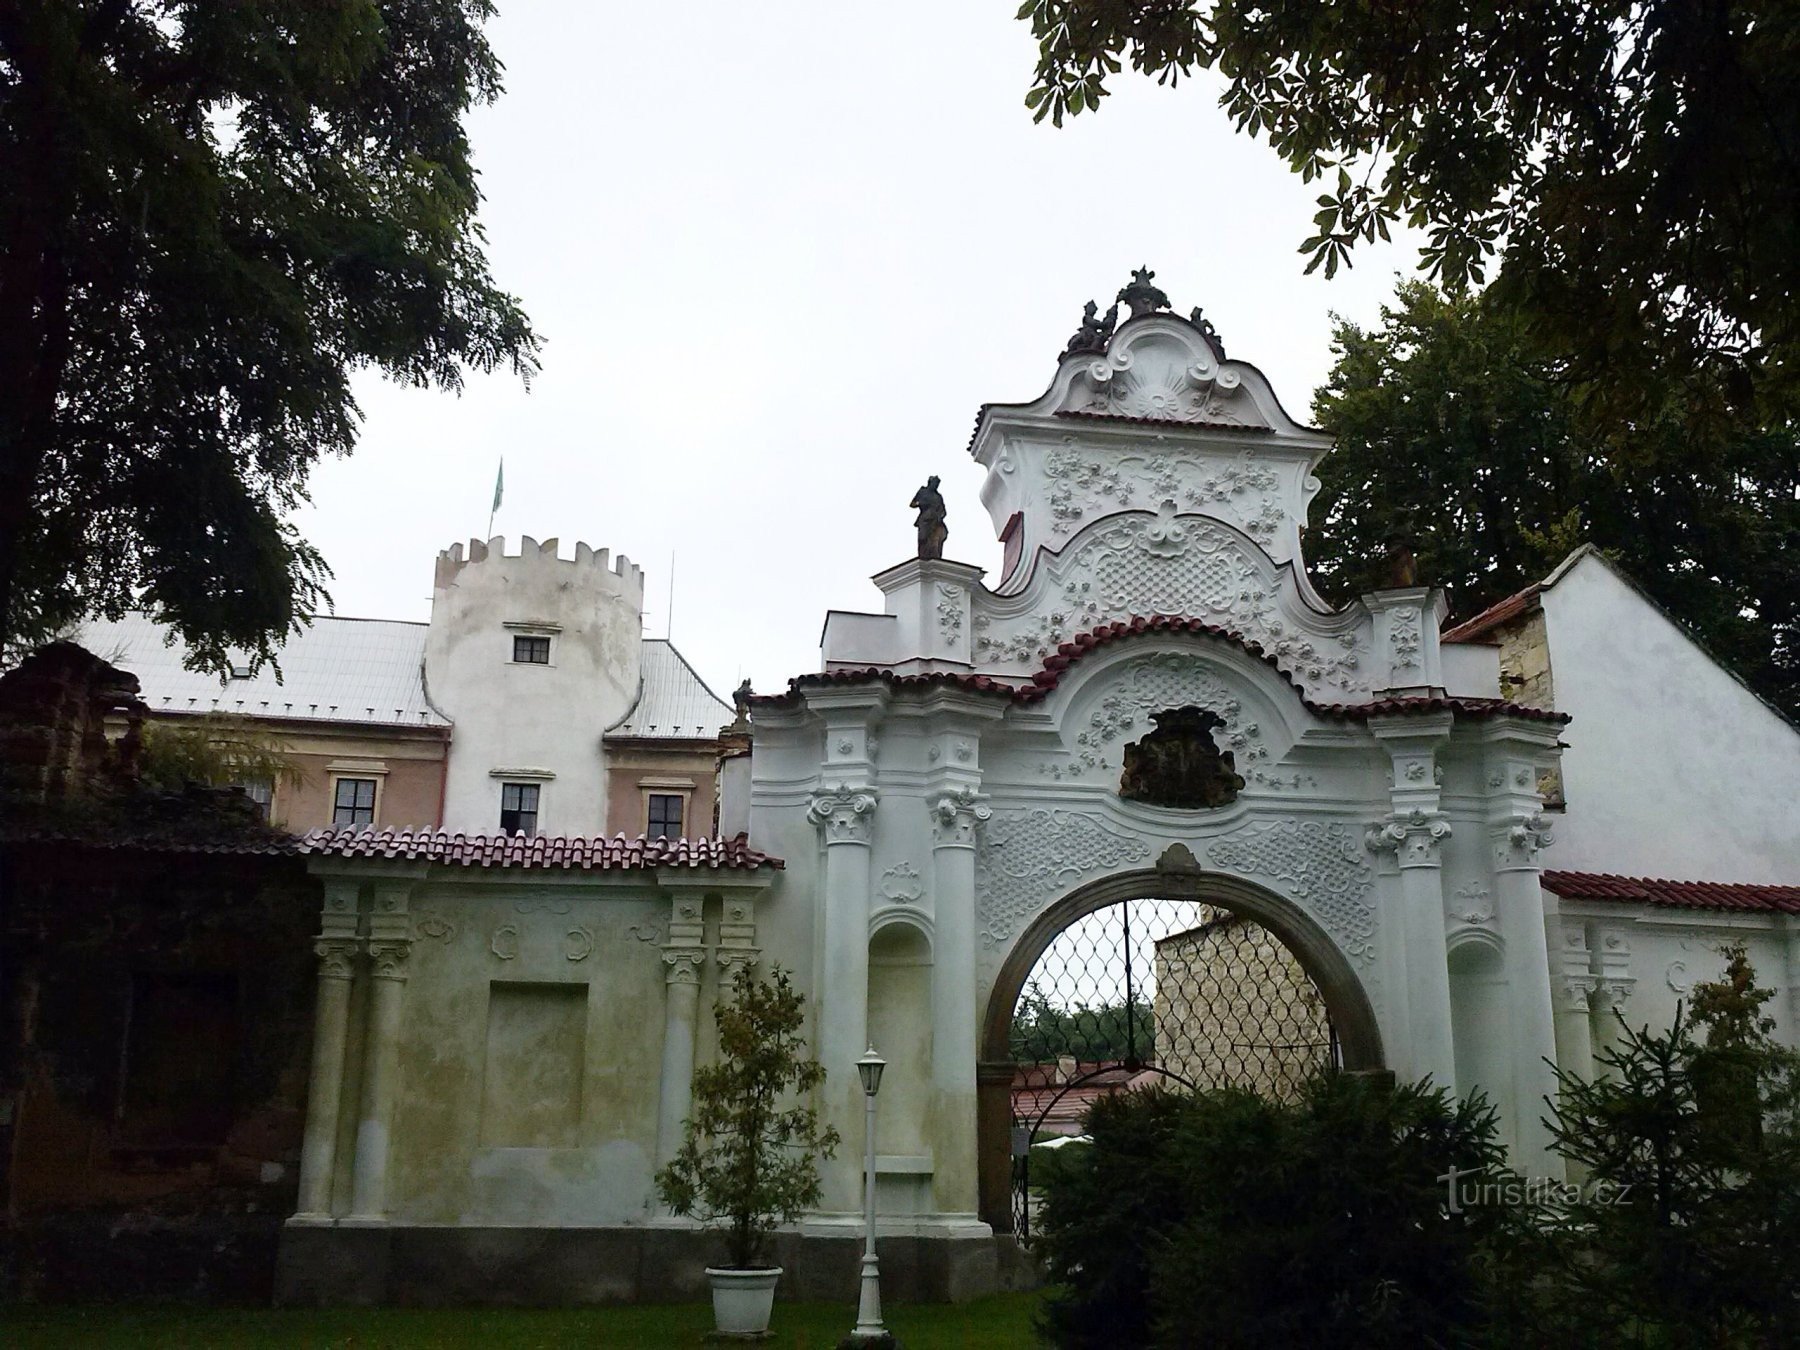 1. Porte d'entrée rococo du château